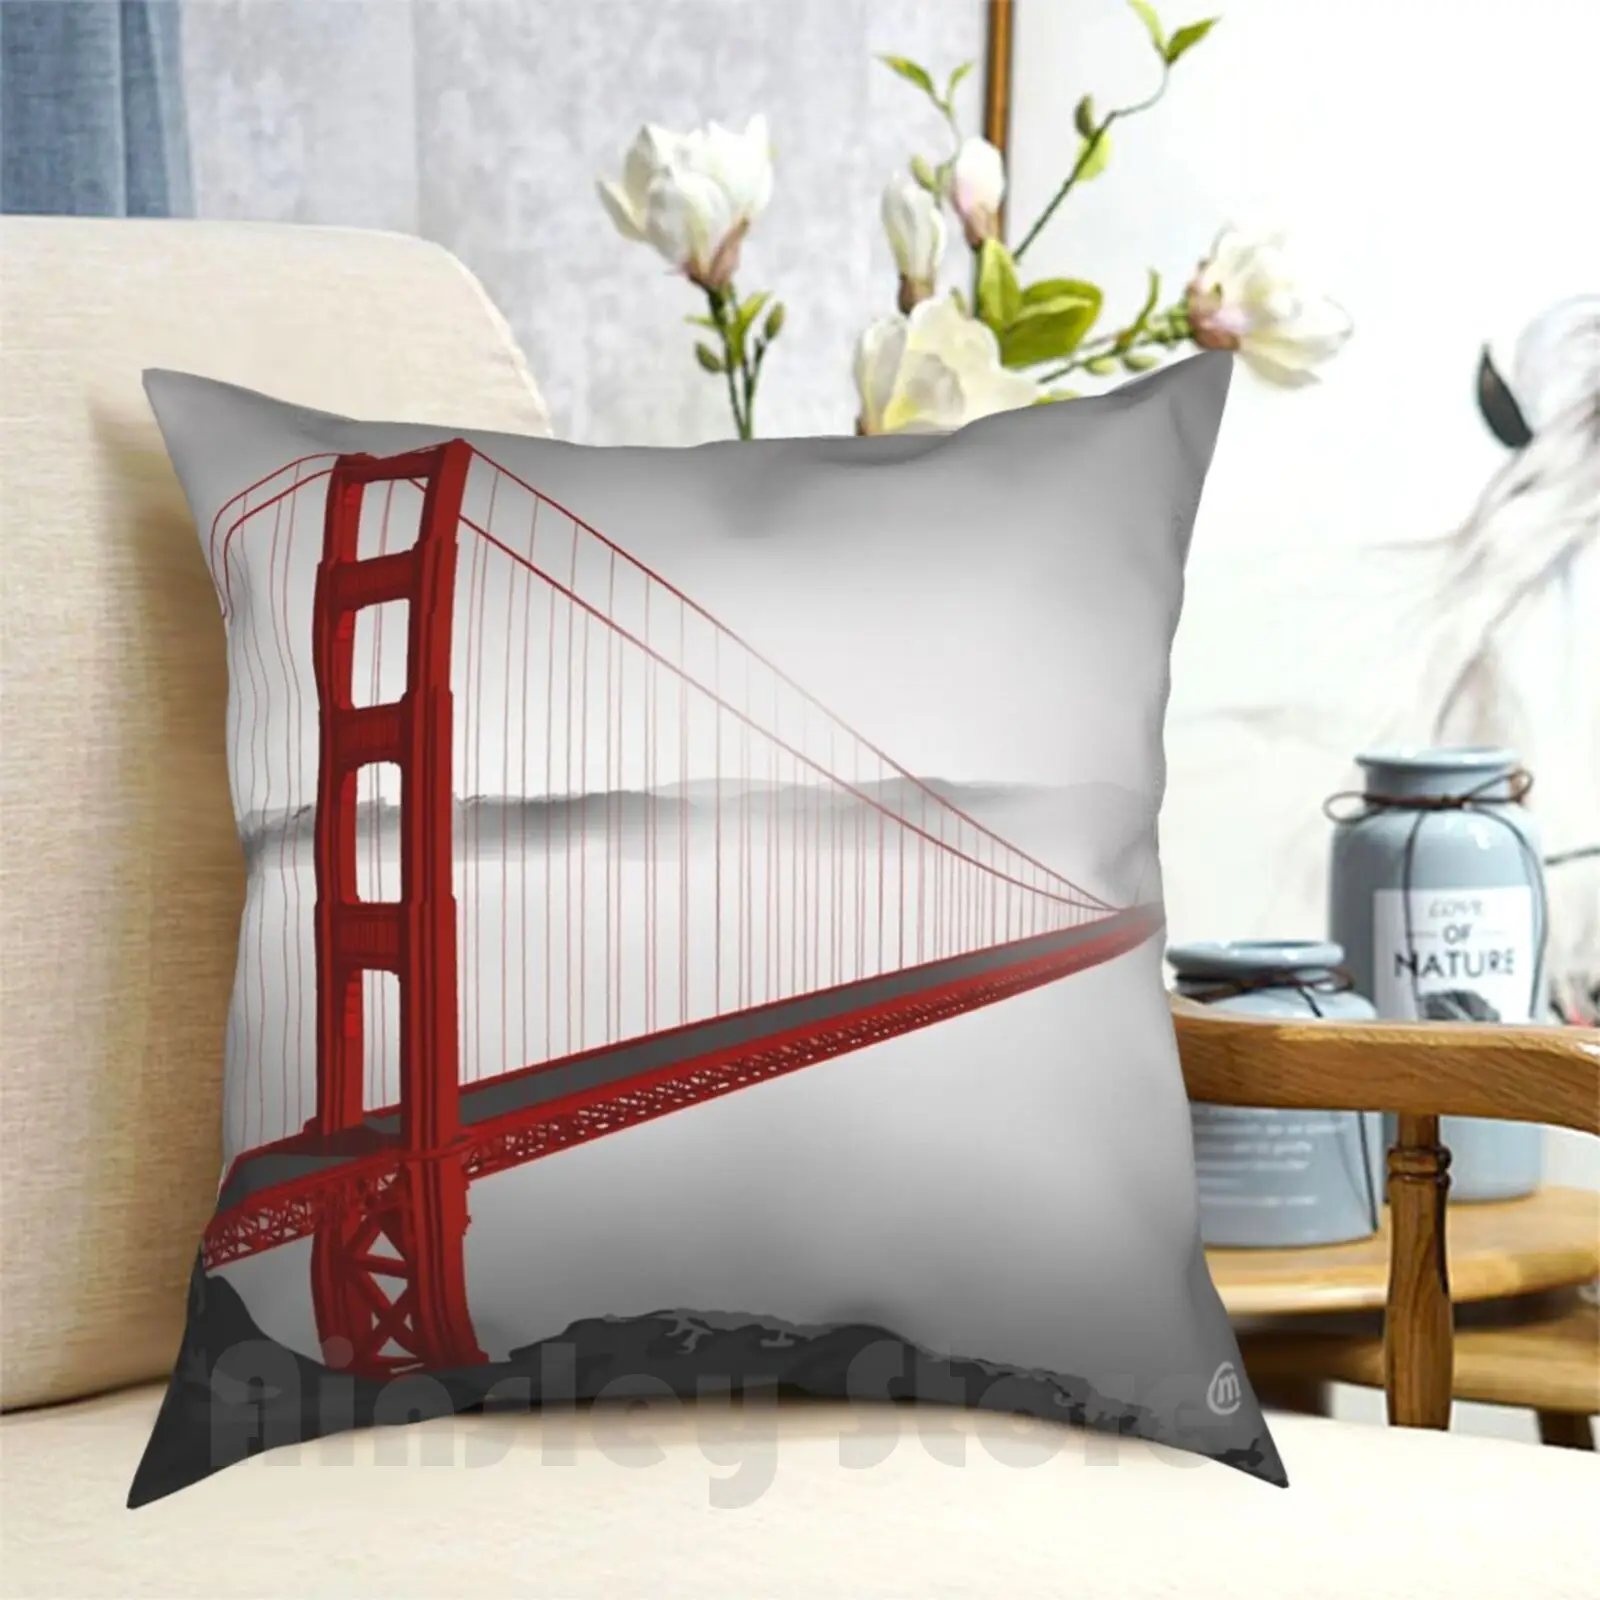 

Golden Gate Bridge ( Vectorillustration ) Pillow Case Printed Home Soft DIY Pillow cover Urban California New San Francisco